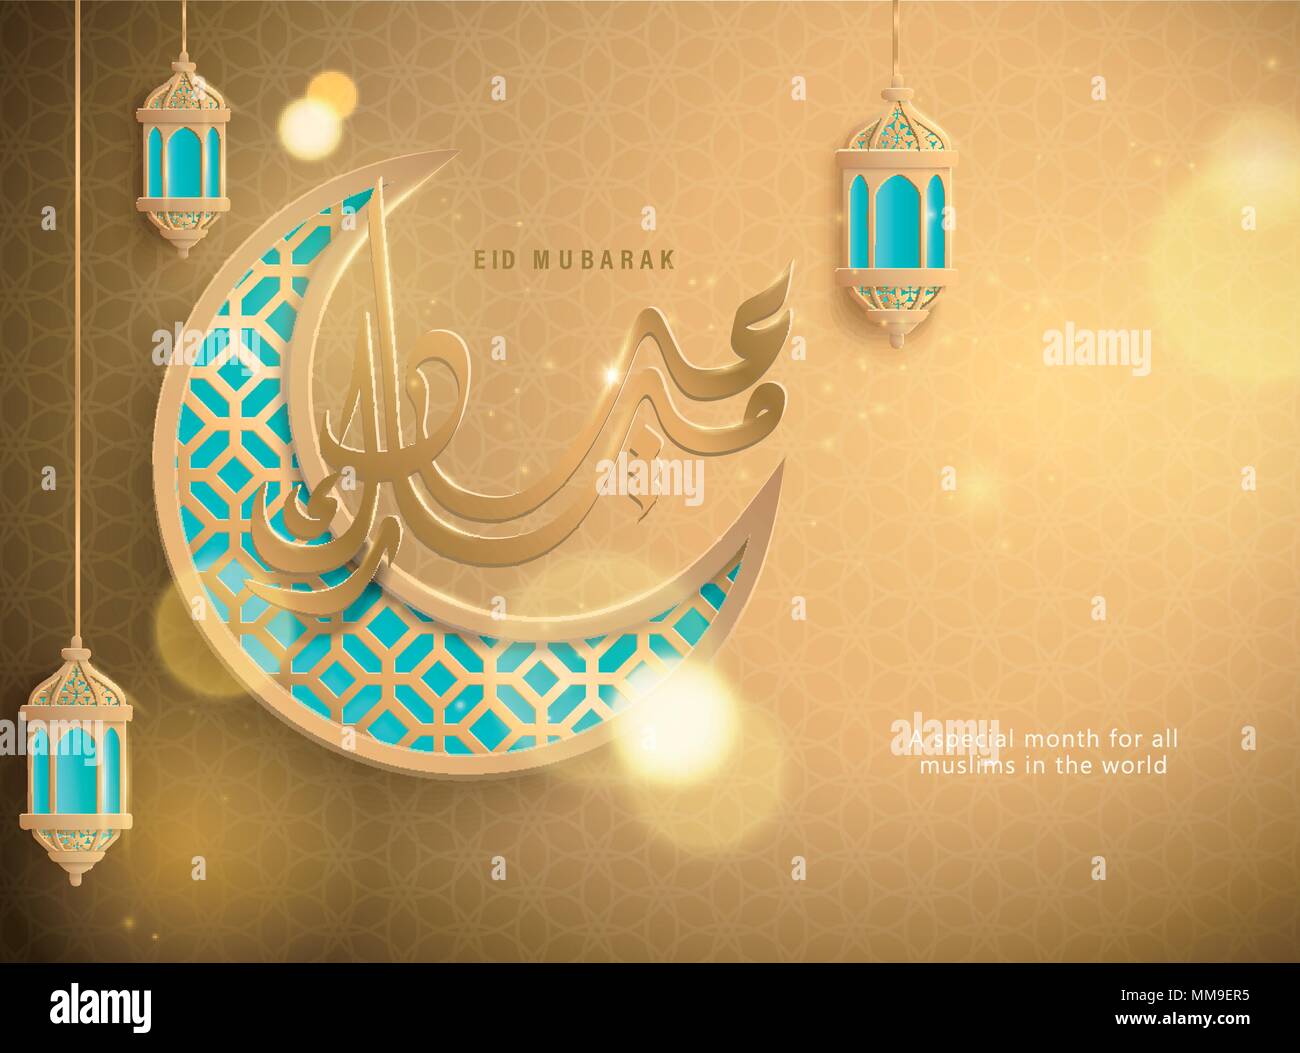 Eid Mubarak conçu avec calligraphie crescent et lanterne en golden et bleu aigue-marine Illustration de Vecteur